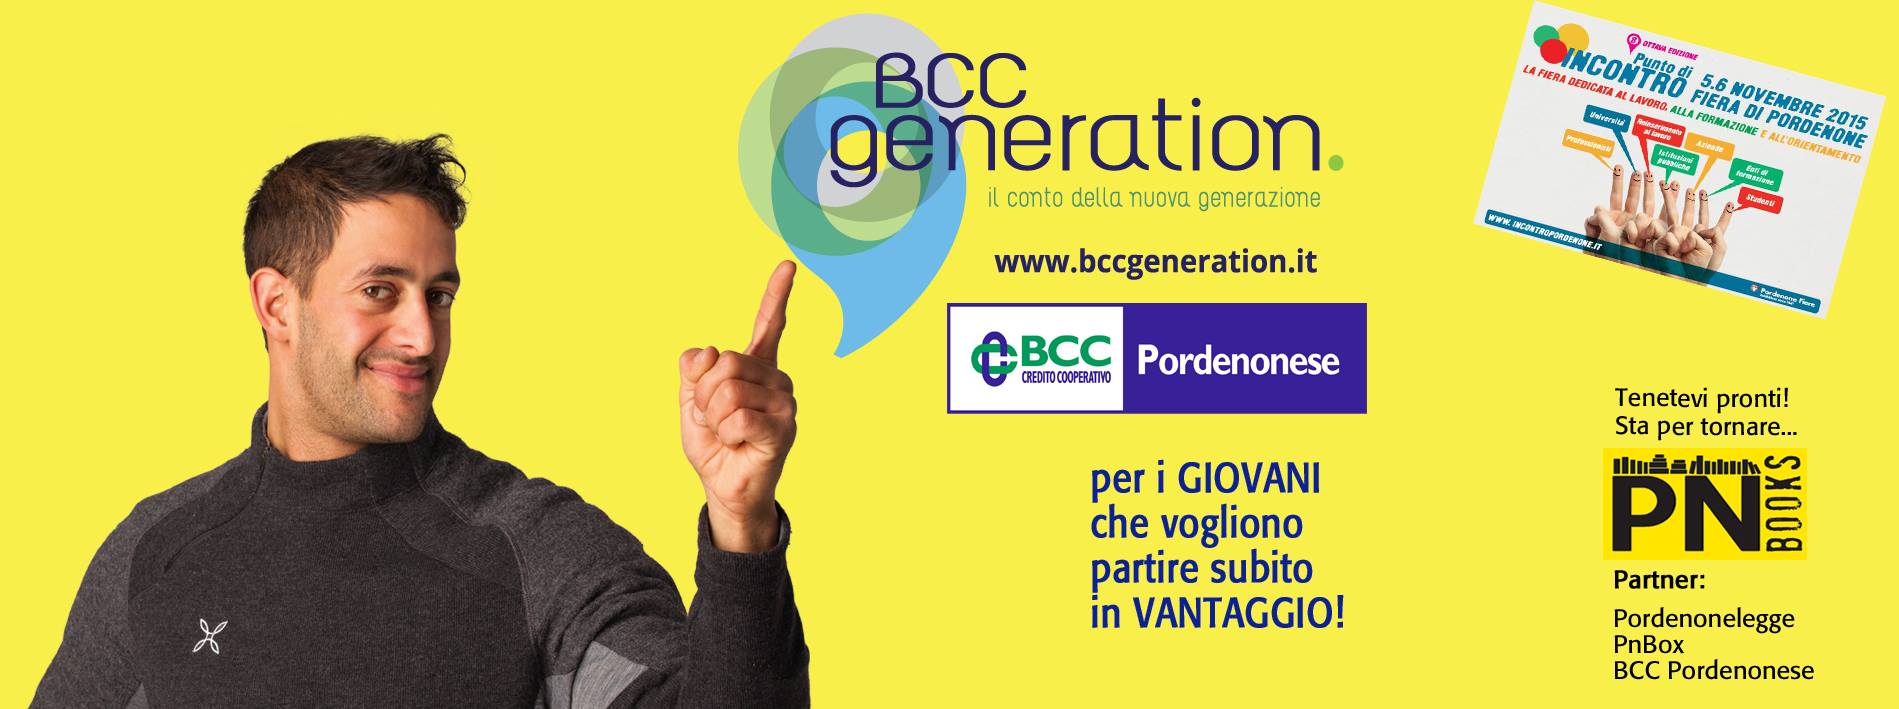 bcc-generation-incontro-pordenone-2015